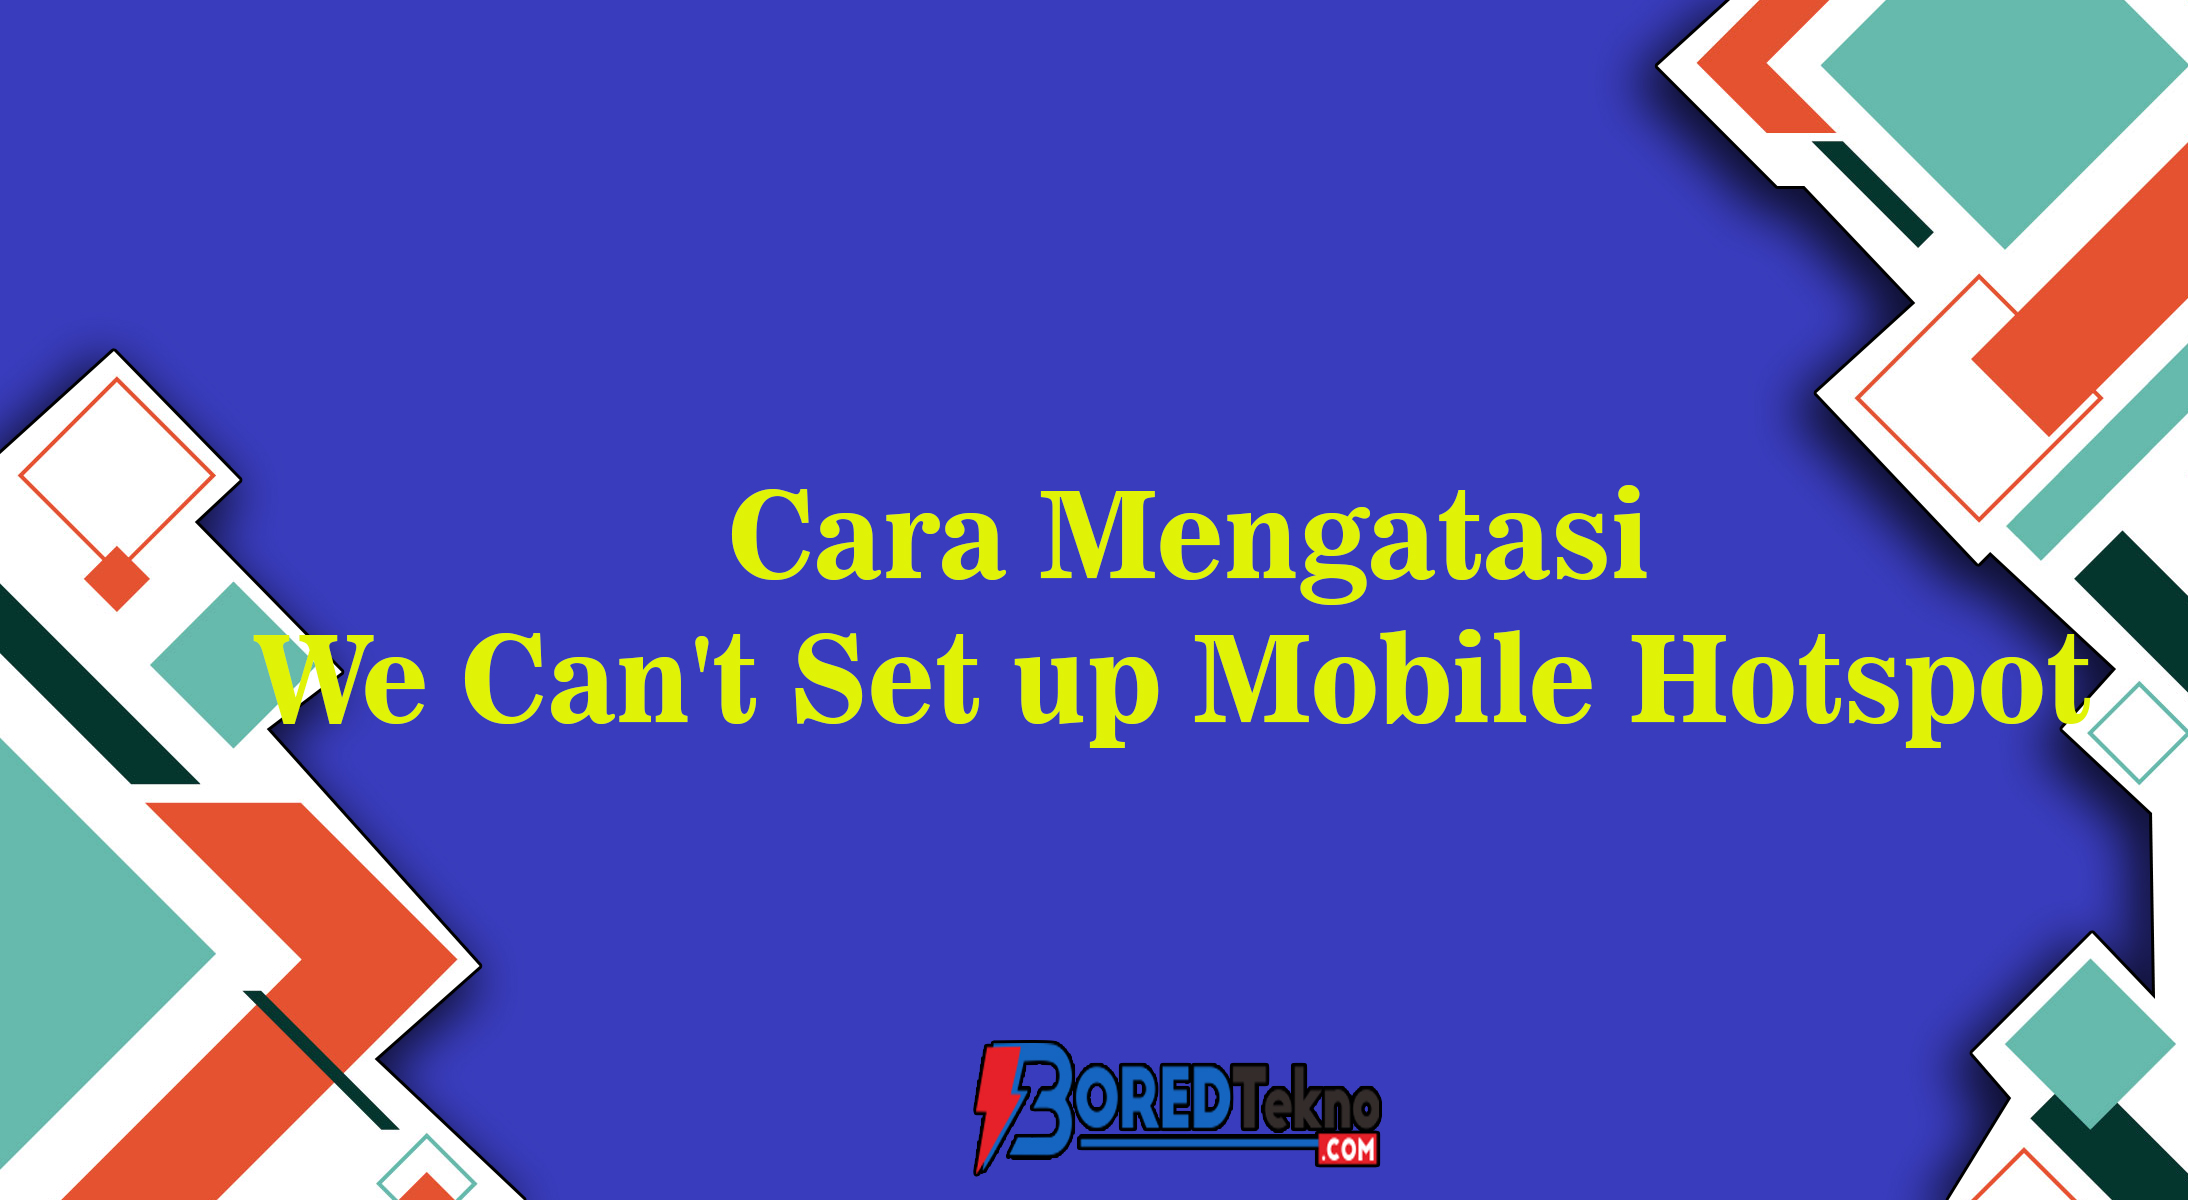 Cara Mengatasi We Can't Set up Mobile Hotspot